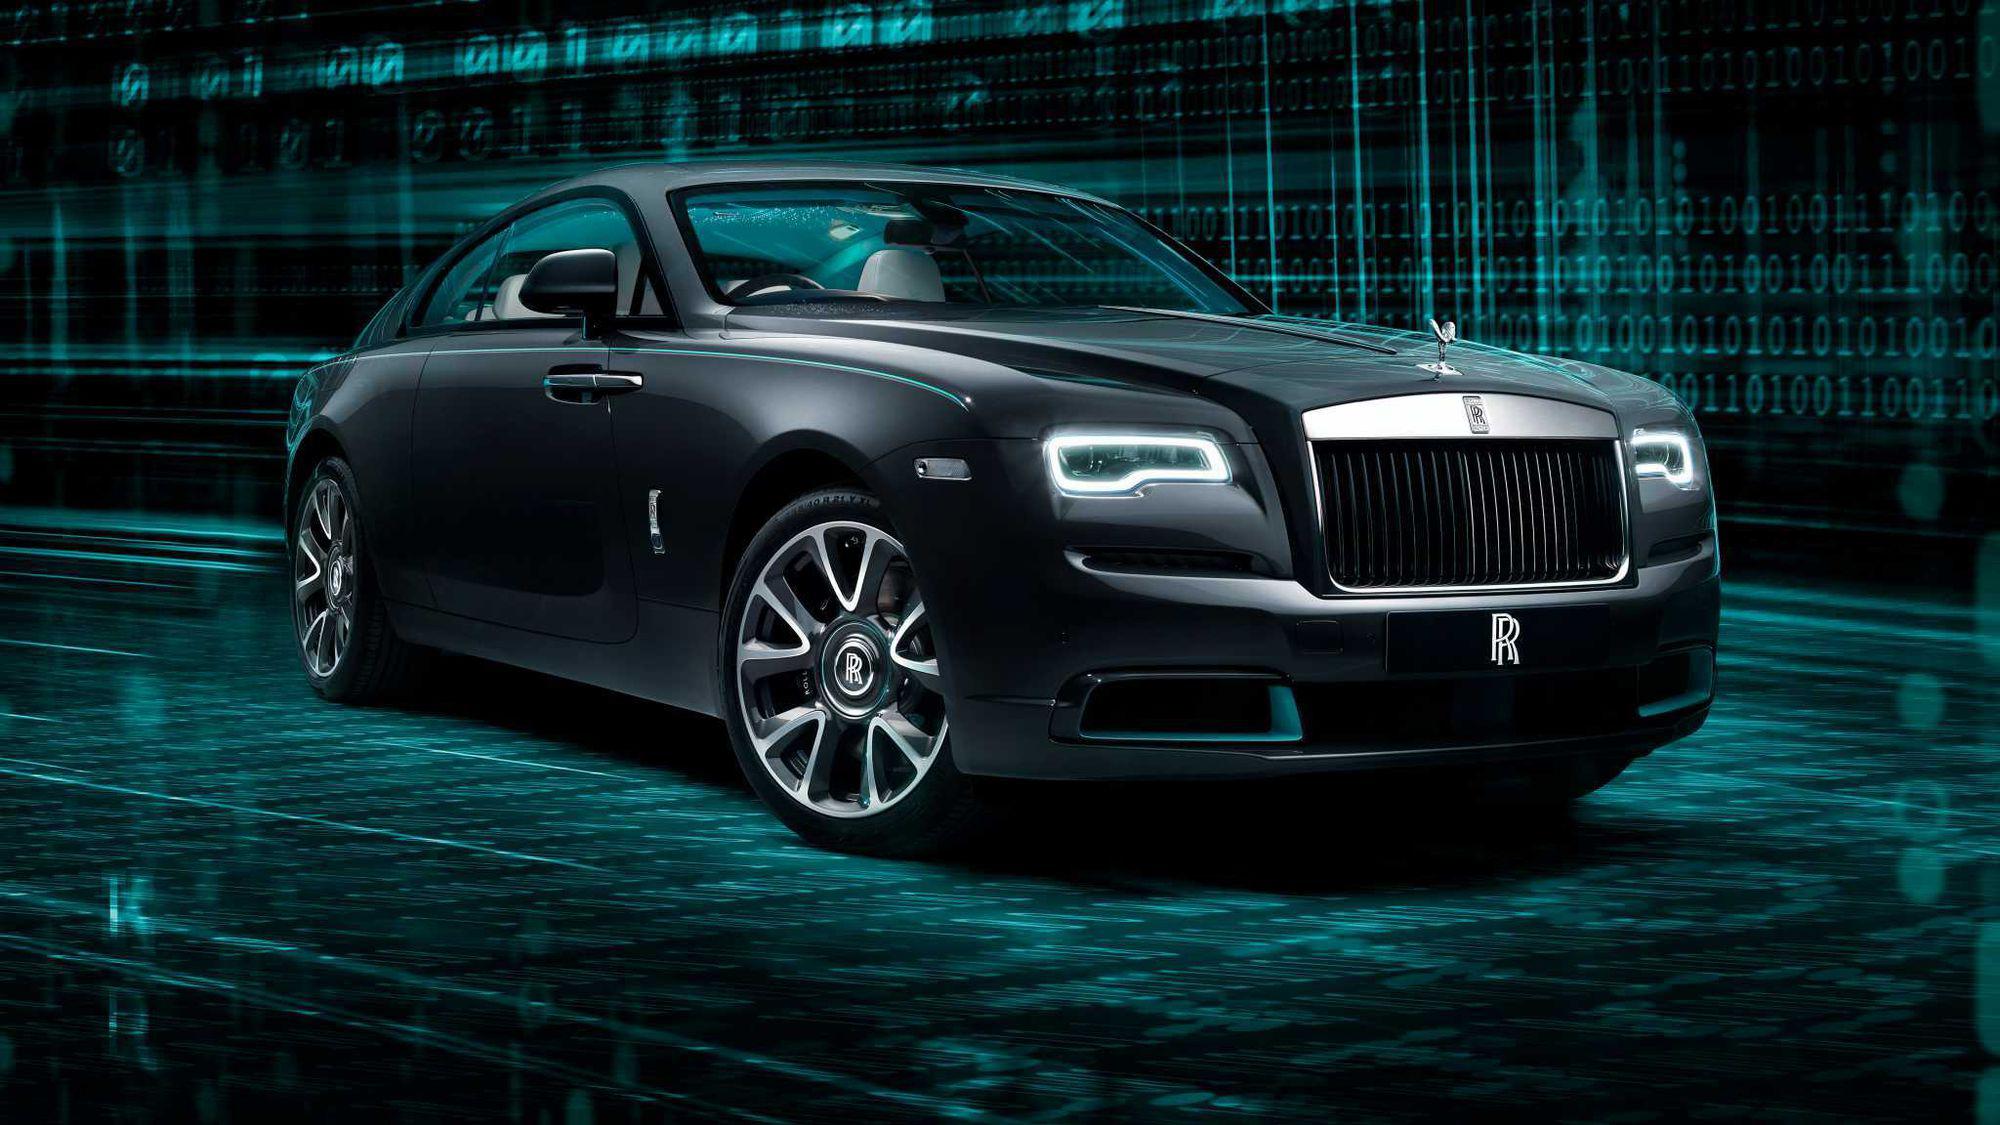 Opulență mistică: Rolls-Royce Wraith Kryptos poartă mesaje ascunse